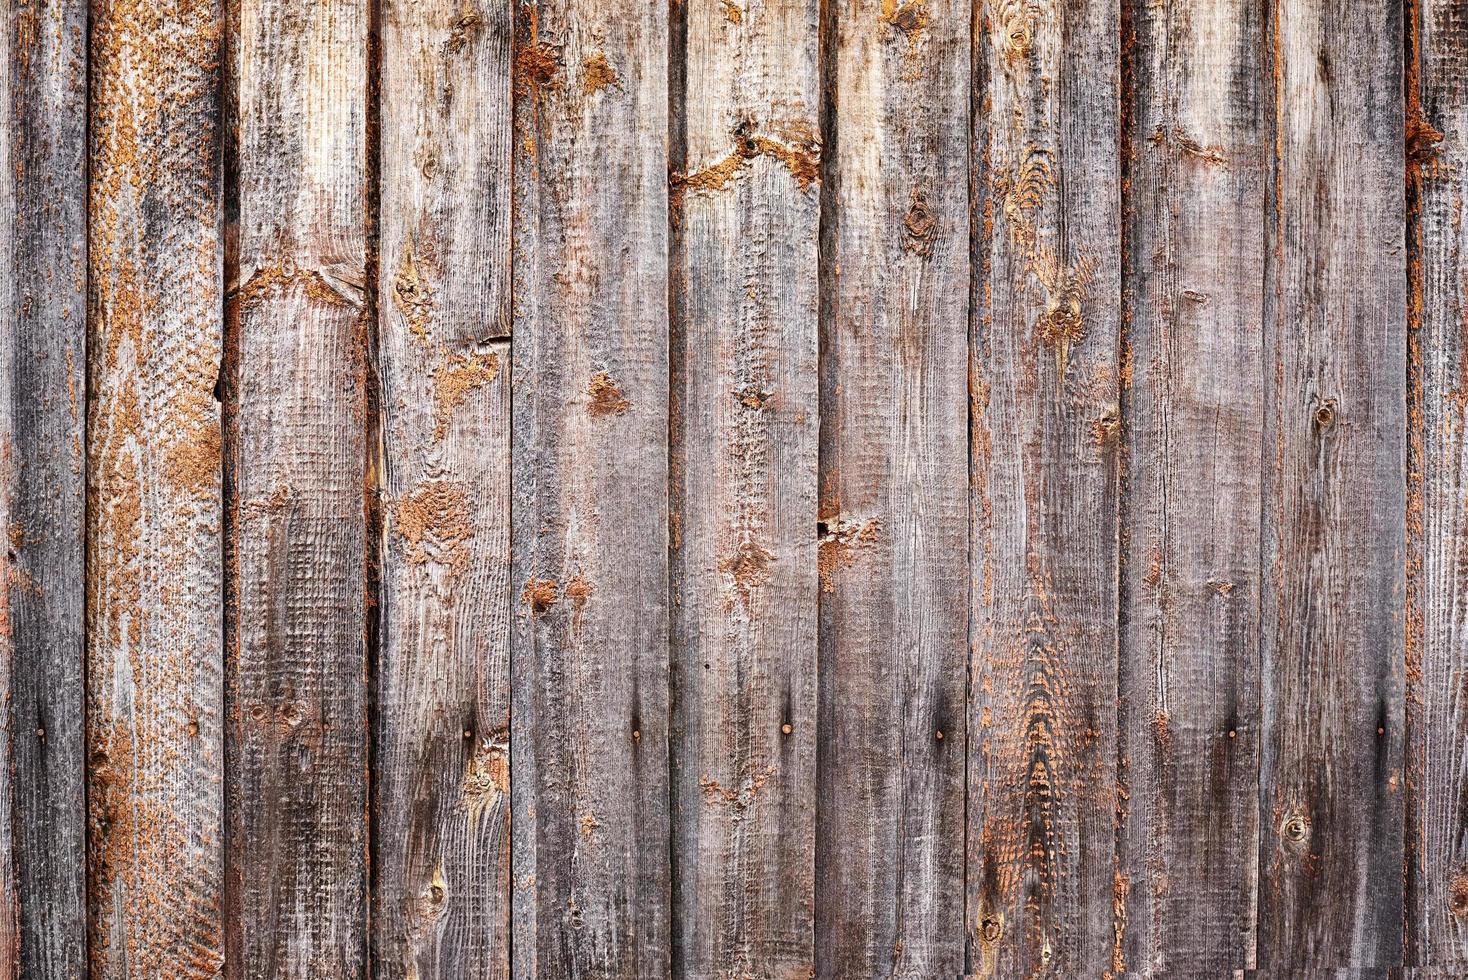 Tablones de madera vieja- –